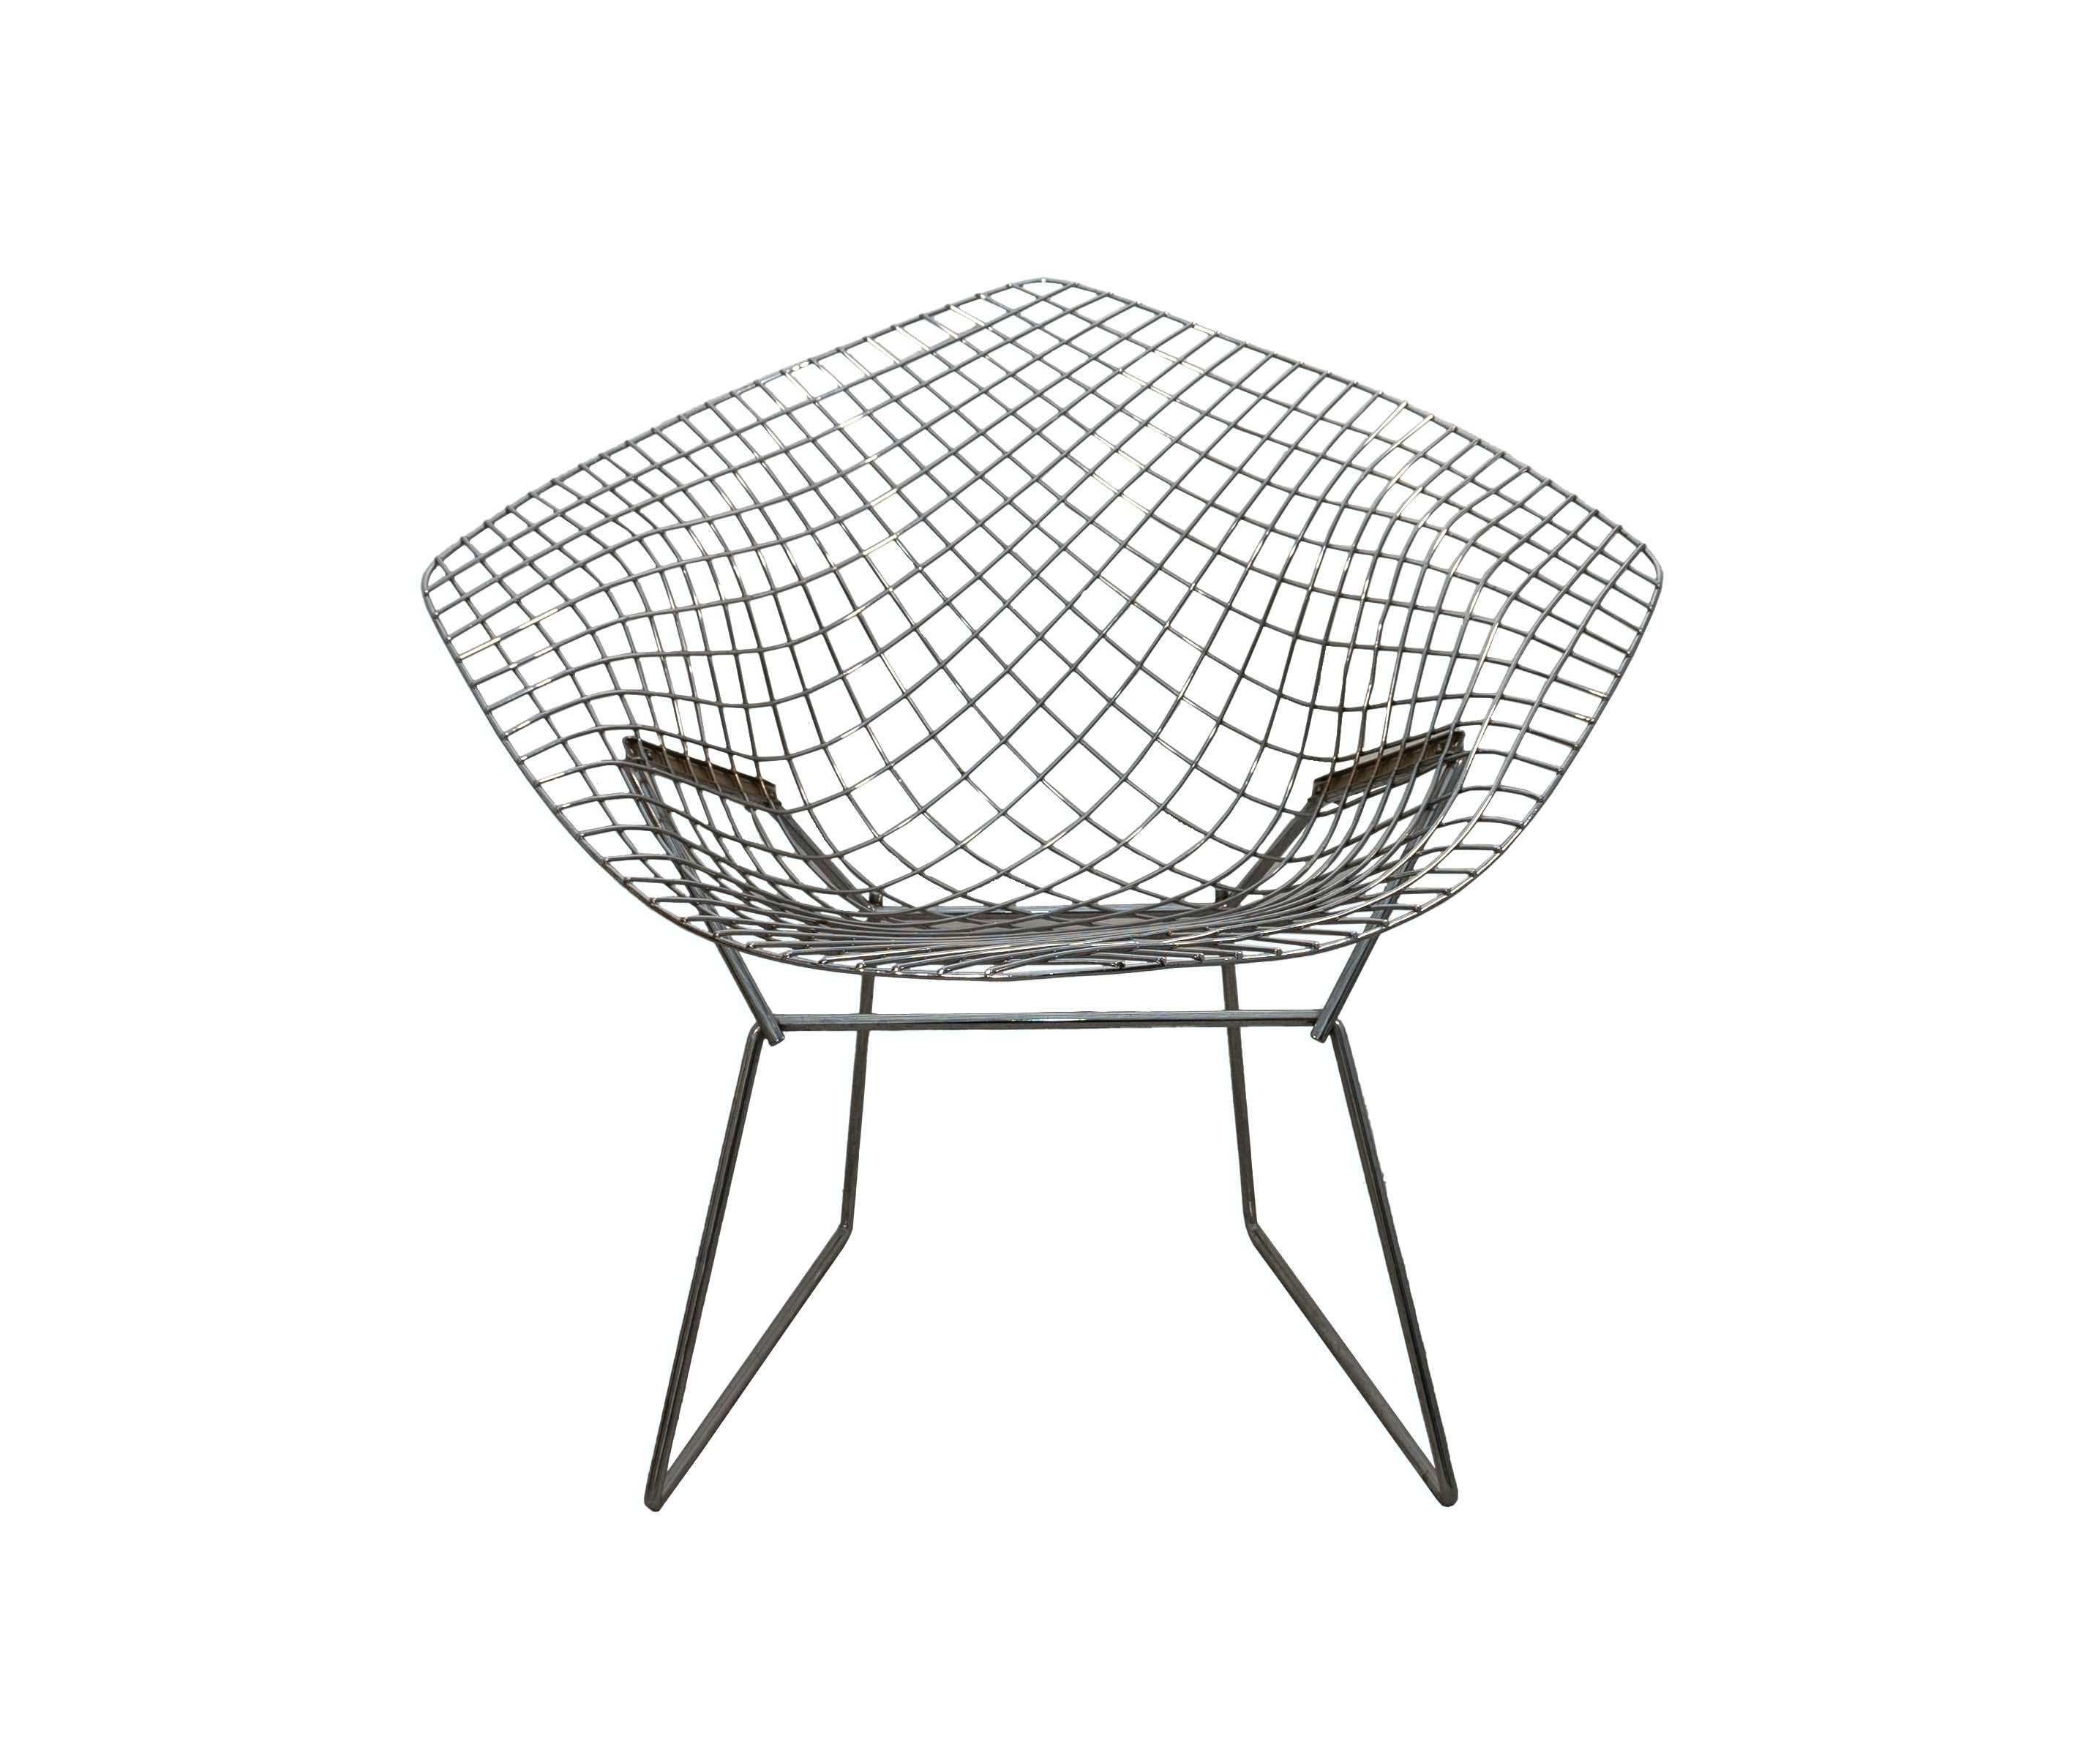 Découvrez une sophistication sculpturale avec cette chaise Harry Bertoia for Knoll Wire Diamond Chair, un véritable bijou de la modernité du milieu du siècle dernier. Son armature métallique complexe et aérienne est un triomphe de la forme et de la